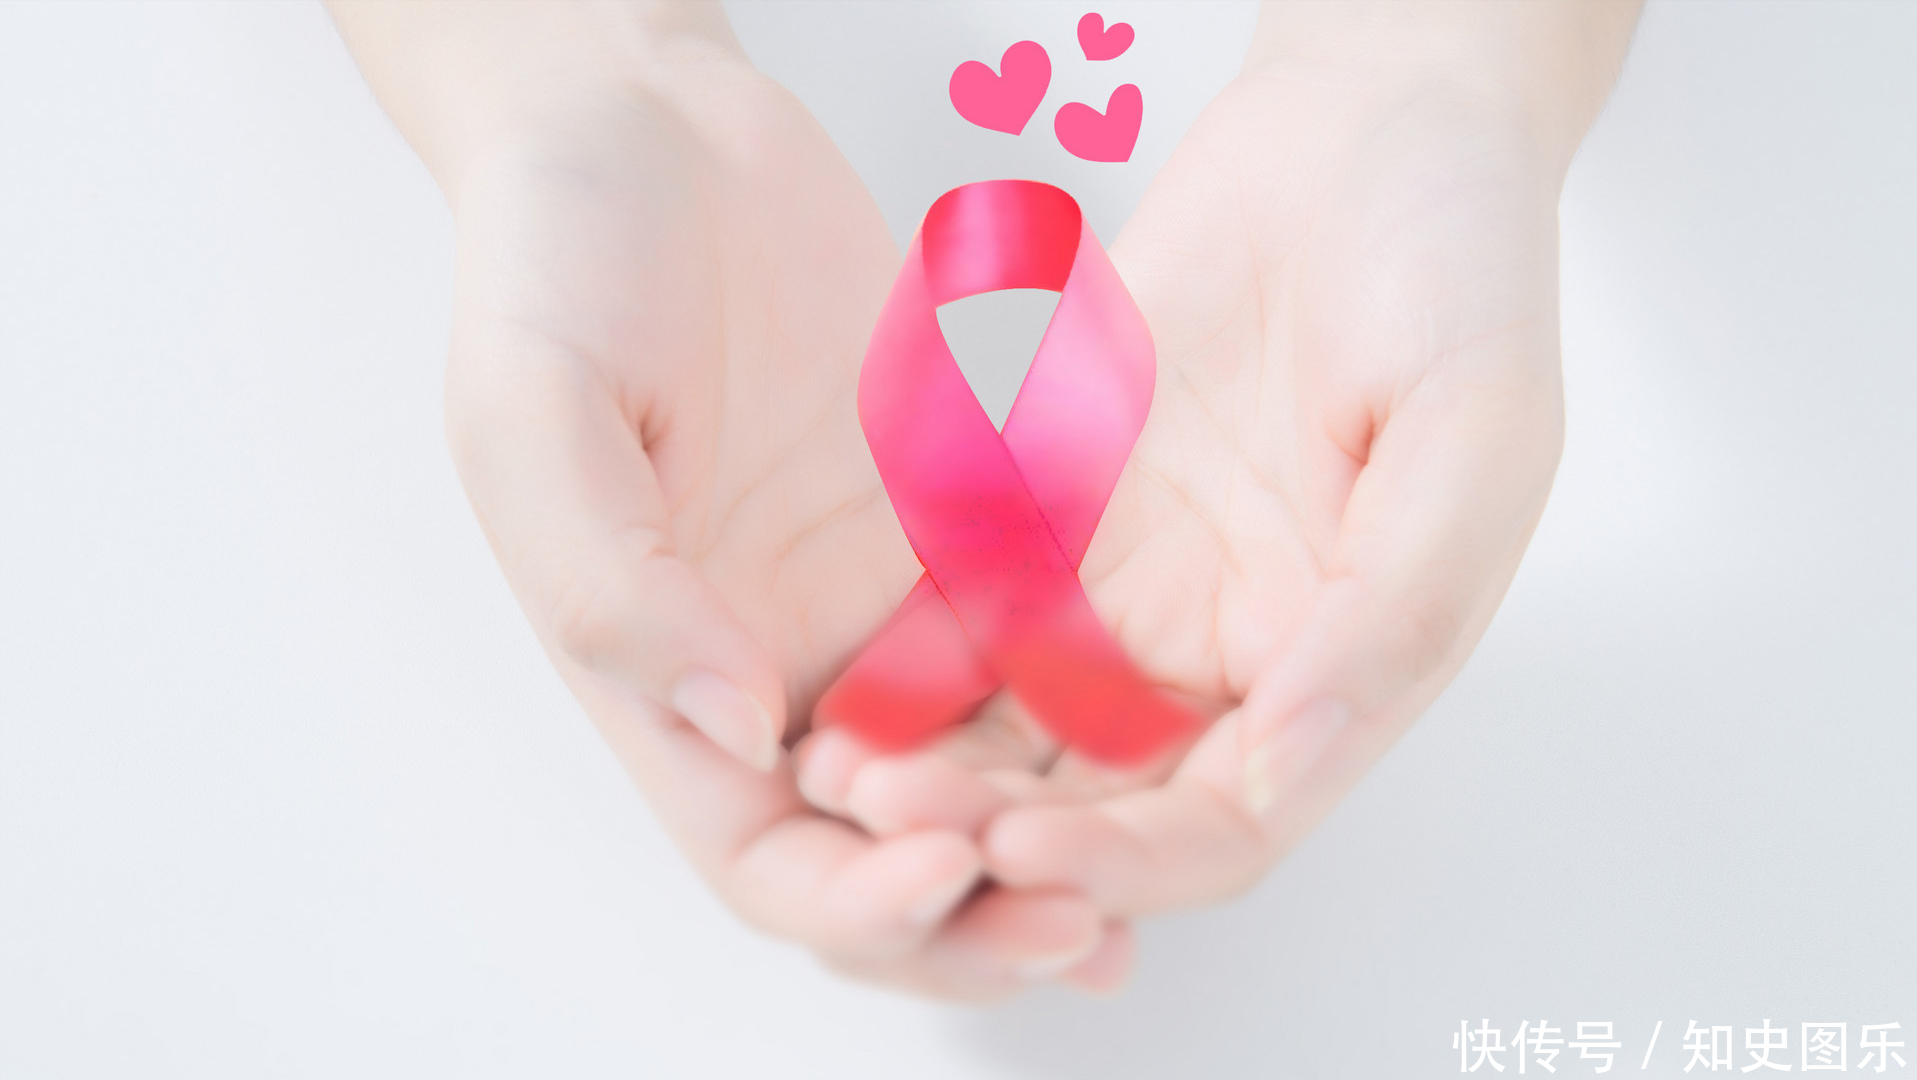 乳腺癌术后乳房再造——背阔肌皮瓣假体植入 - 周兆平整形网